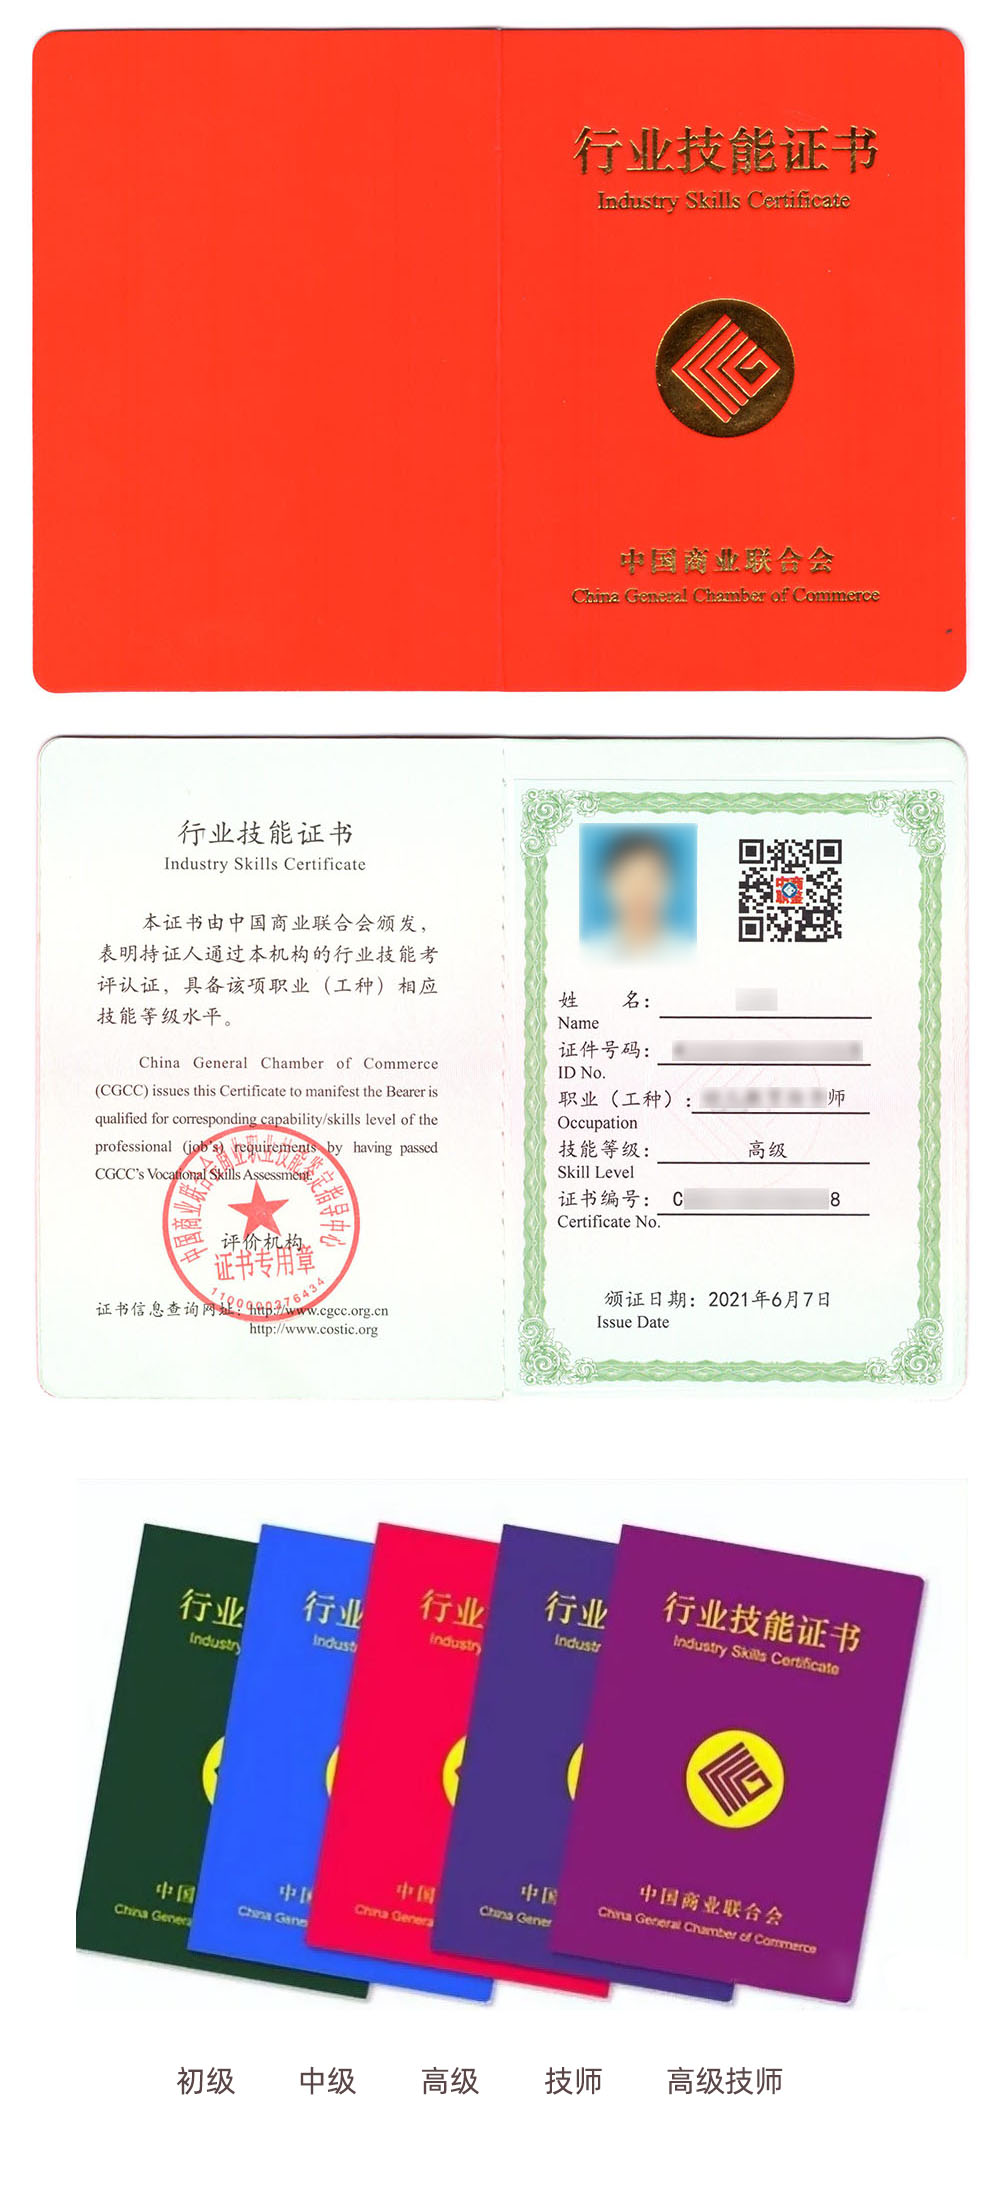 中国商业联合会商业职业技能鉴定中心 行业技能证书 项目管理师证证书样本